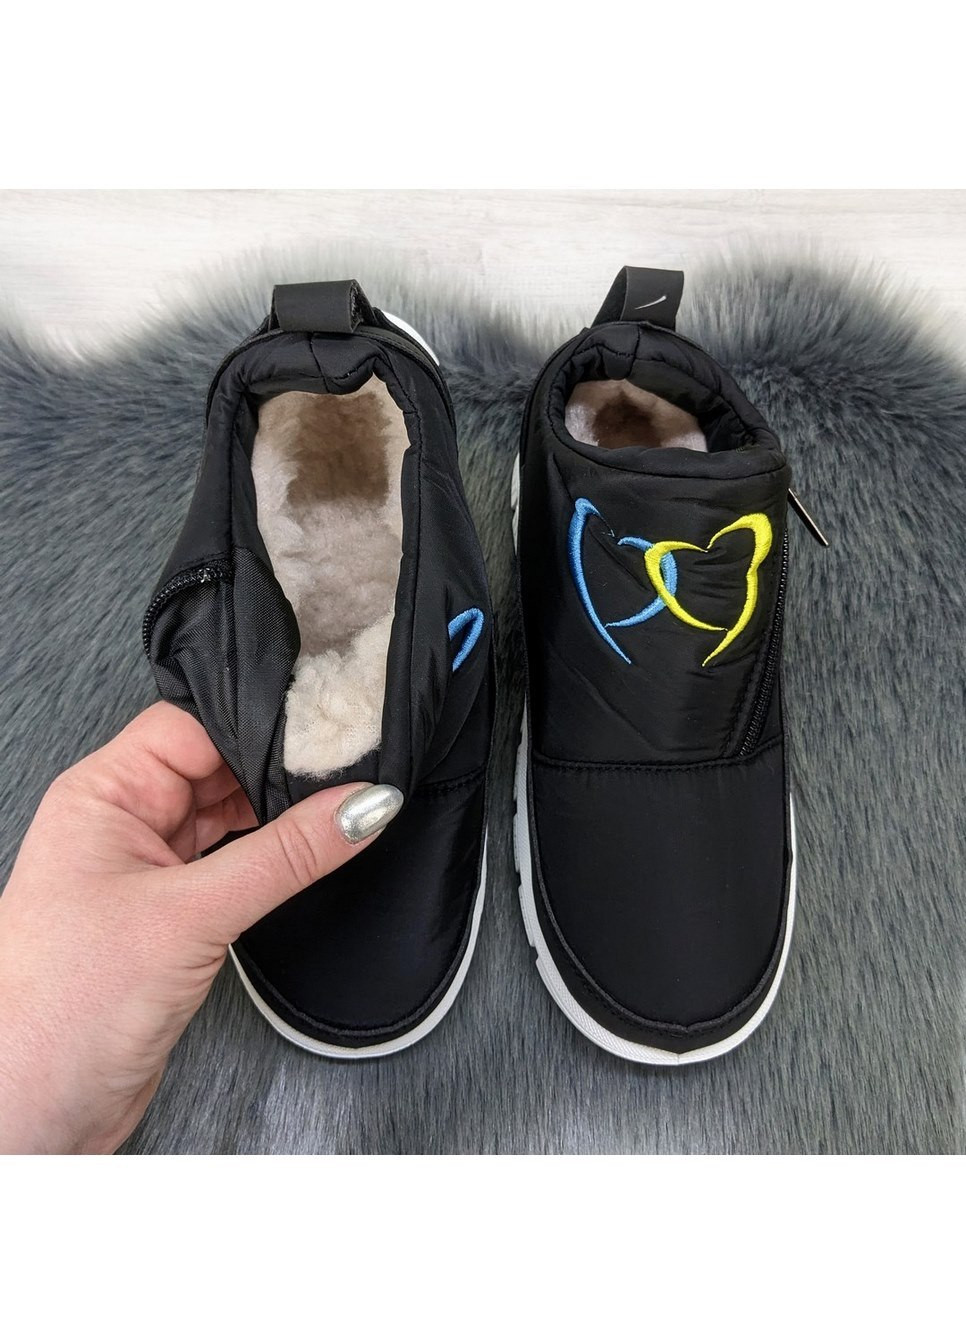 Зимние ботинки дутики женские черные на меху SV тканевые